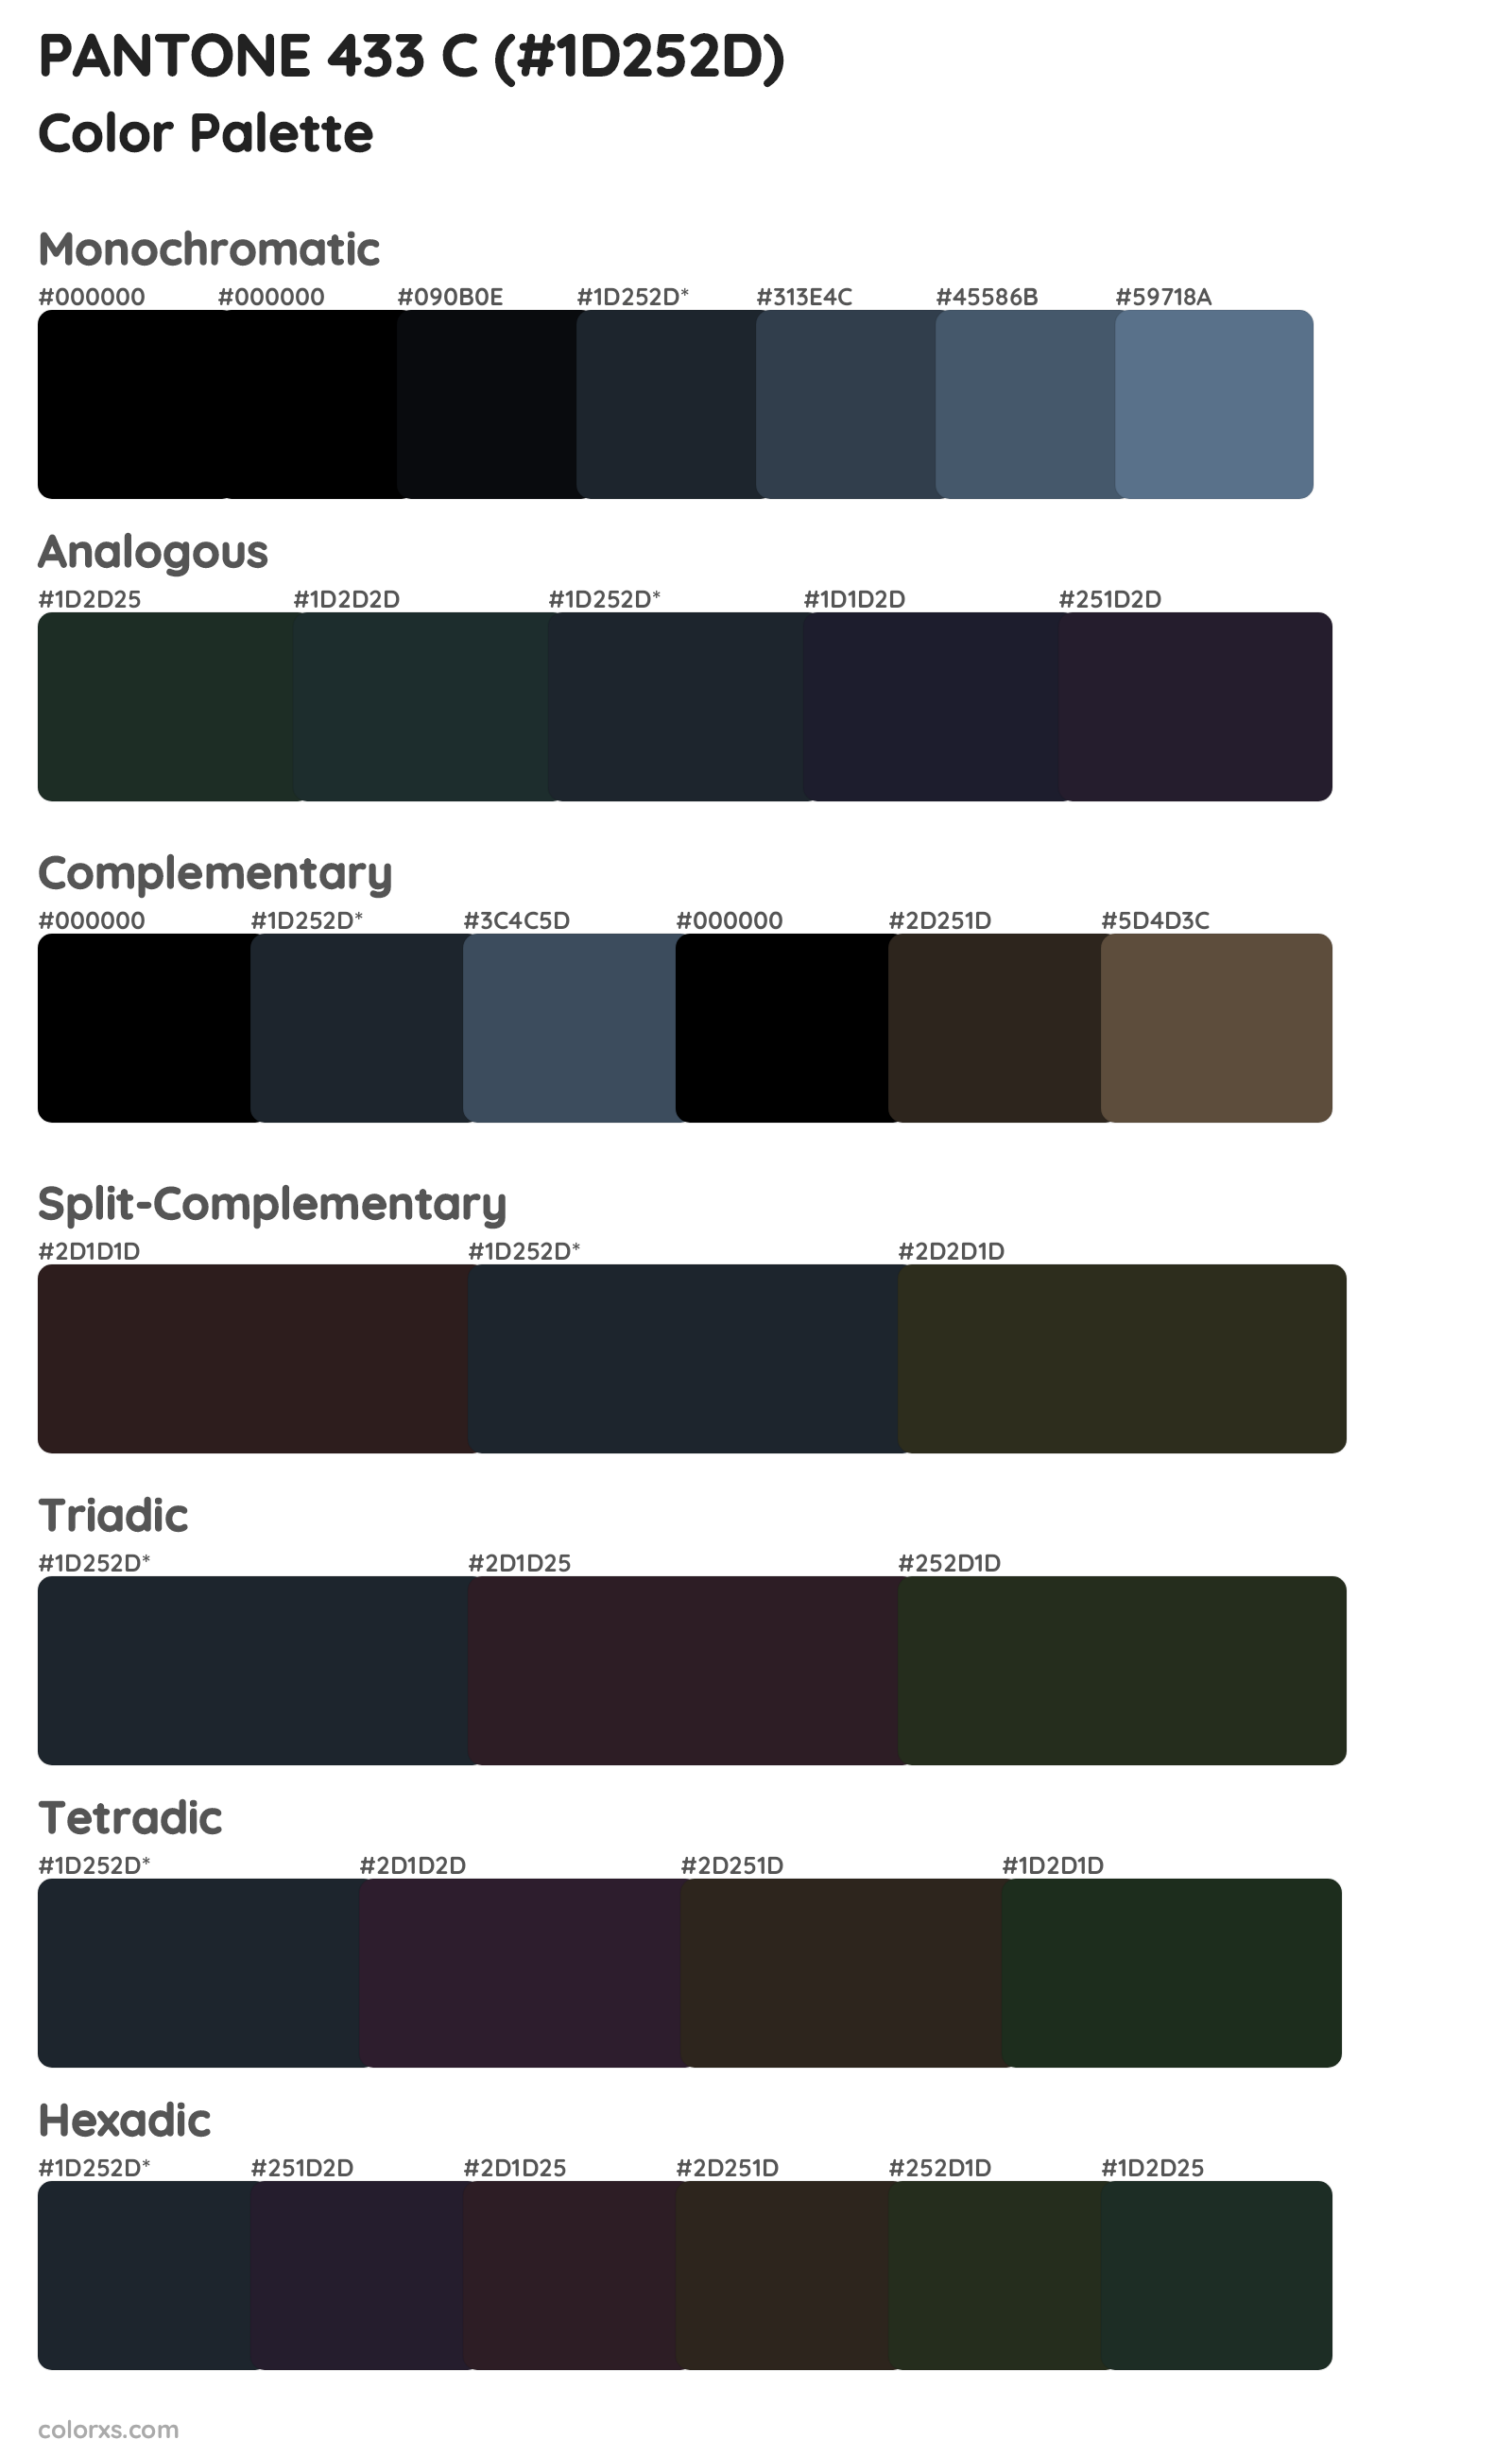 PANTONE 433 C Color Scheme Palettes